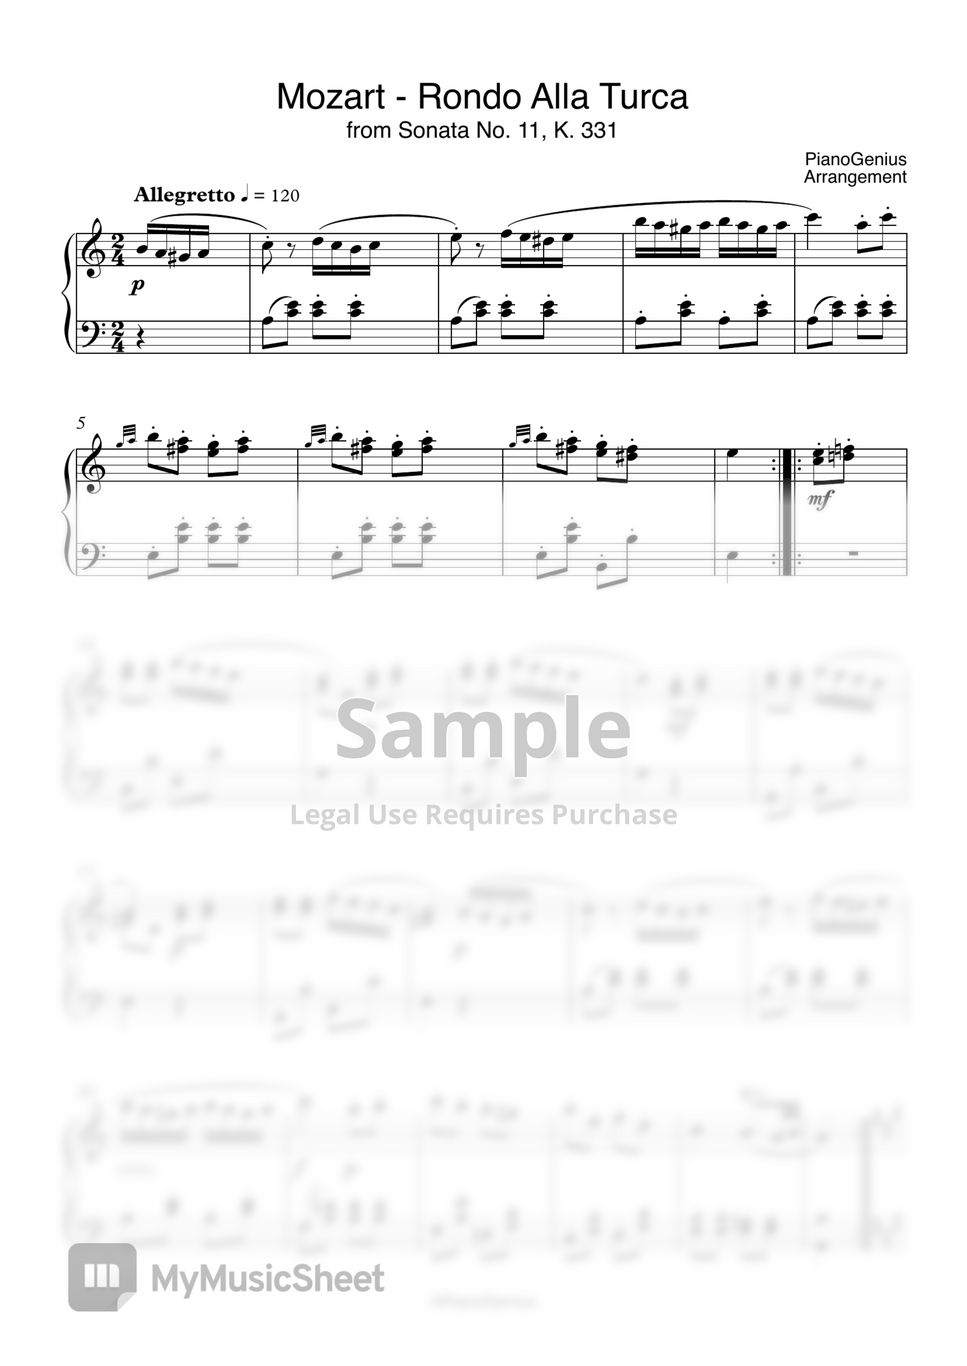 Mozart - Rondo Alla Turca (Turkish March) by PianoGenius